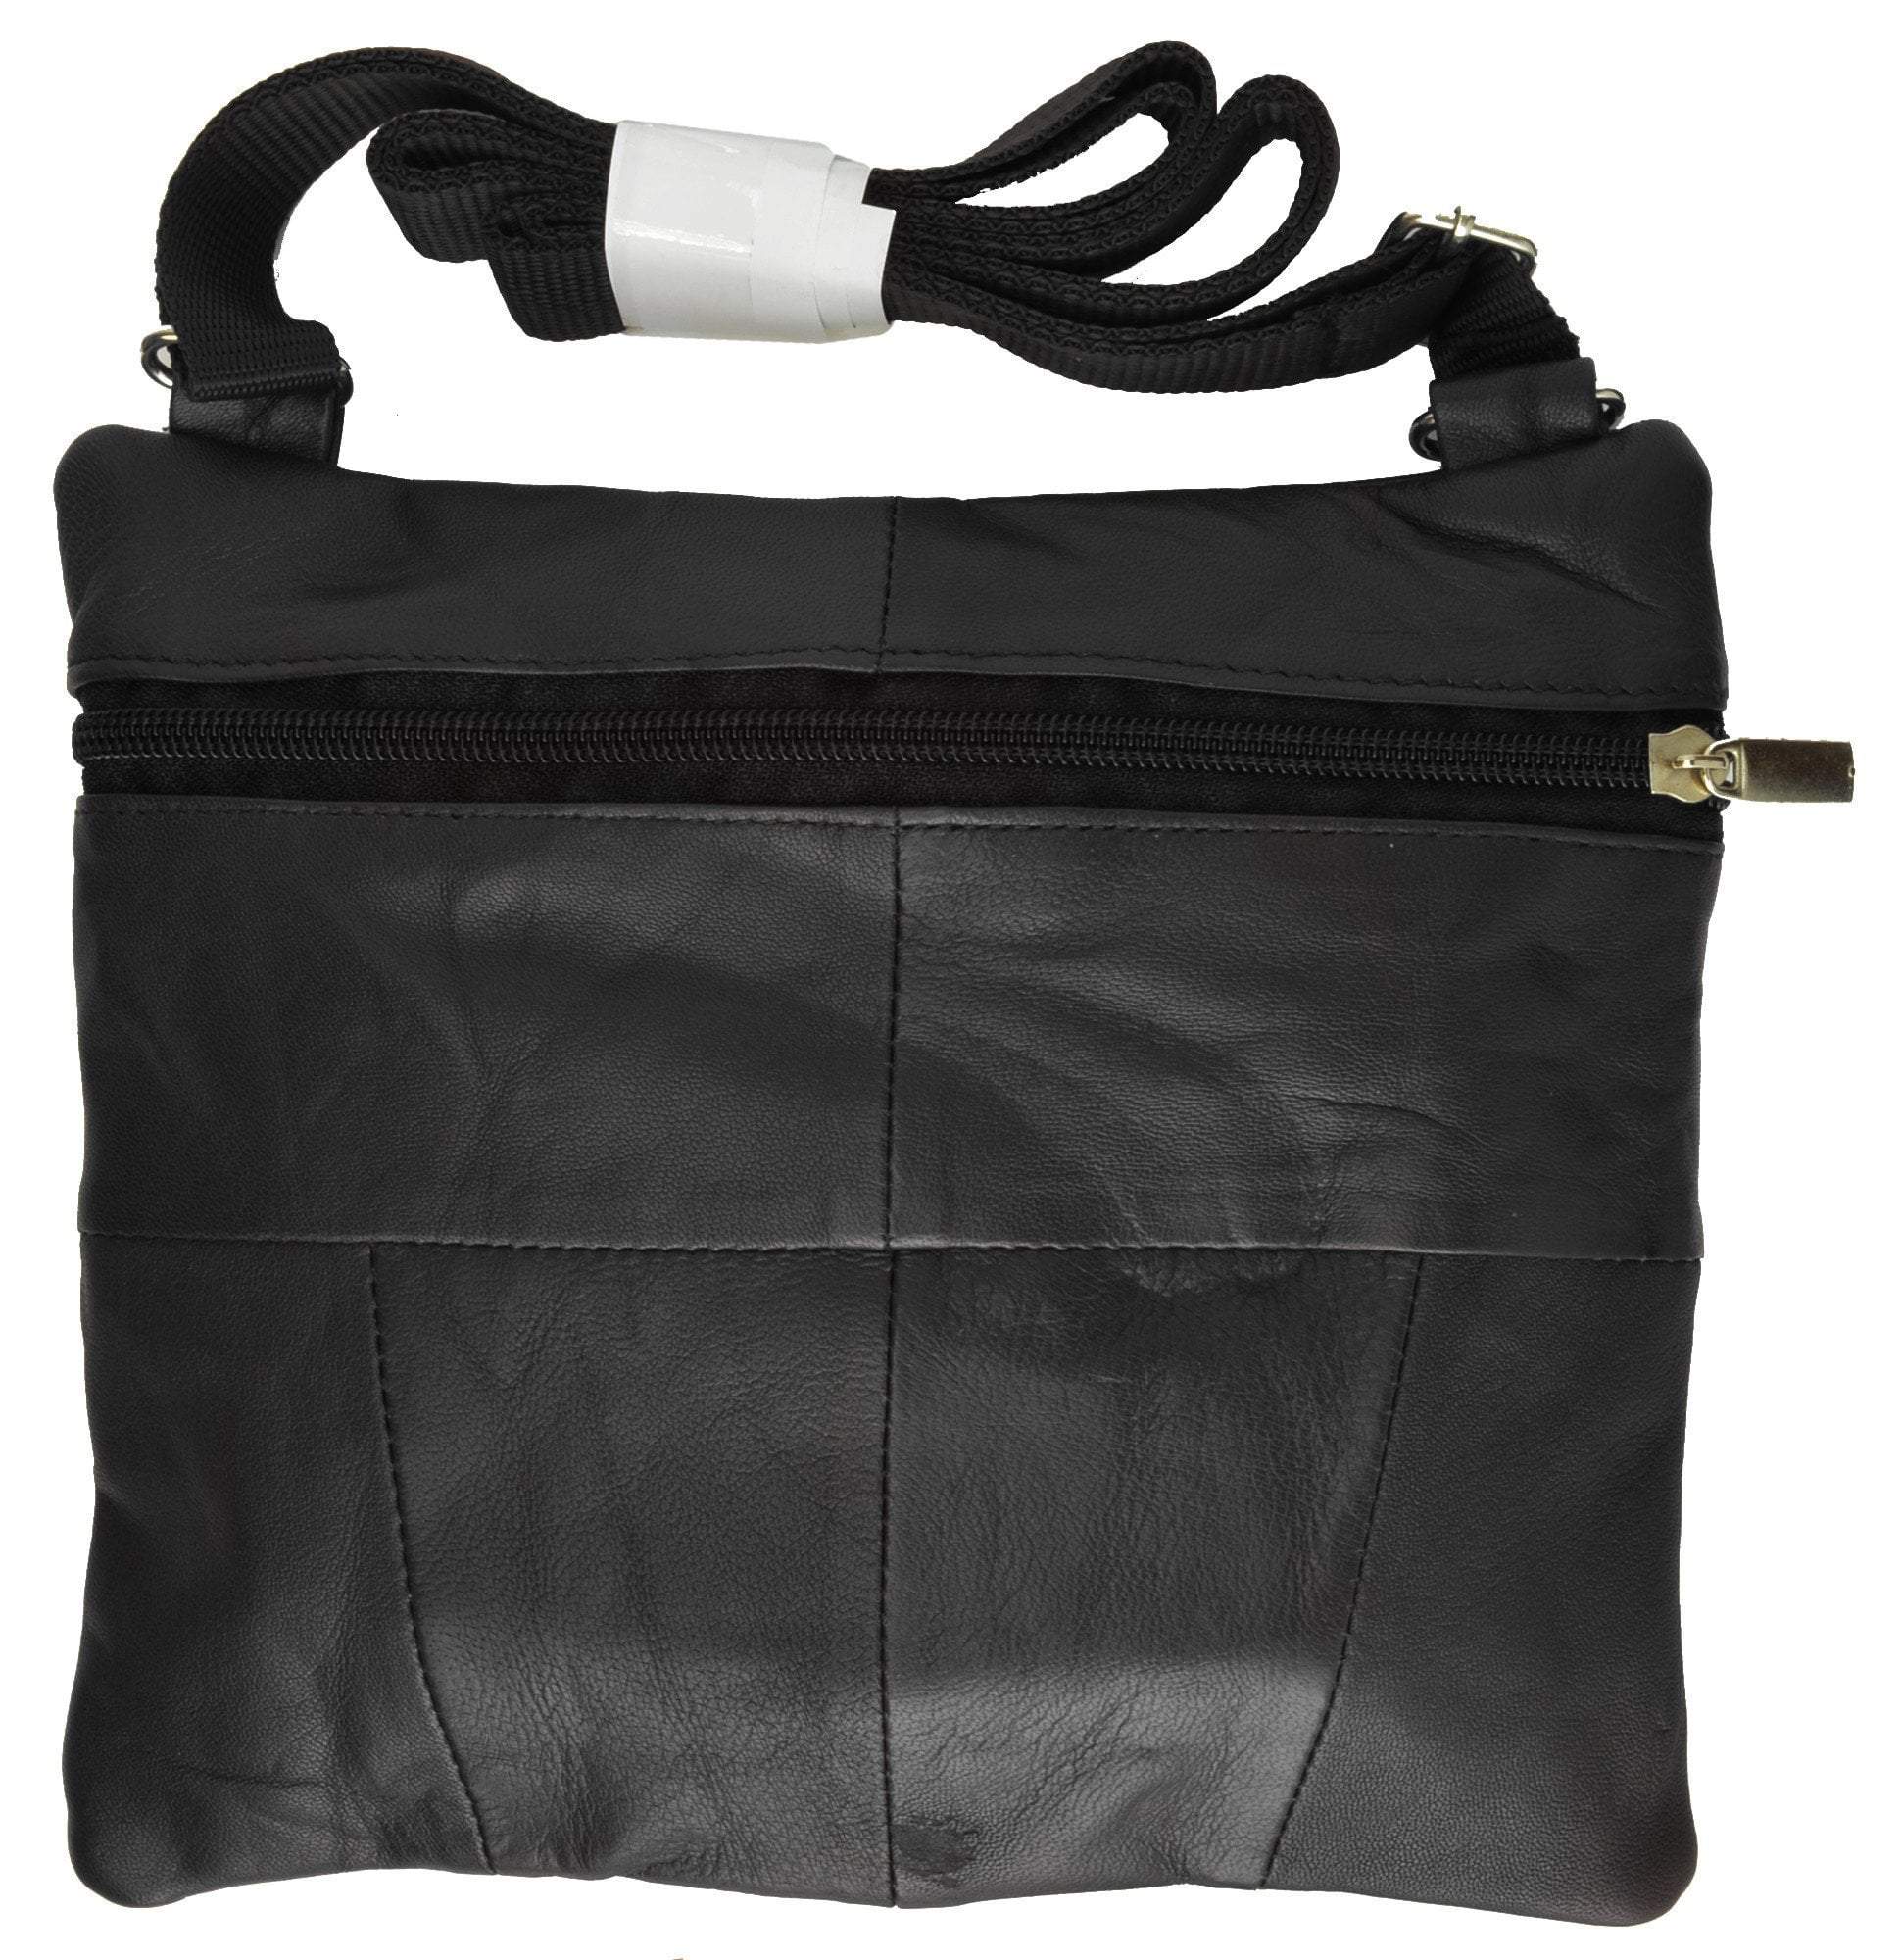 Marshal Wallet Soft Leather Cross Body Bag Purse Shoulder Bag 5 Pocket Organizer Micro HandbagTravel Wallet Multiple Colors HN907 , Adult Unisex, Size